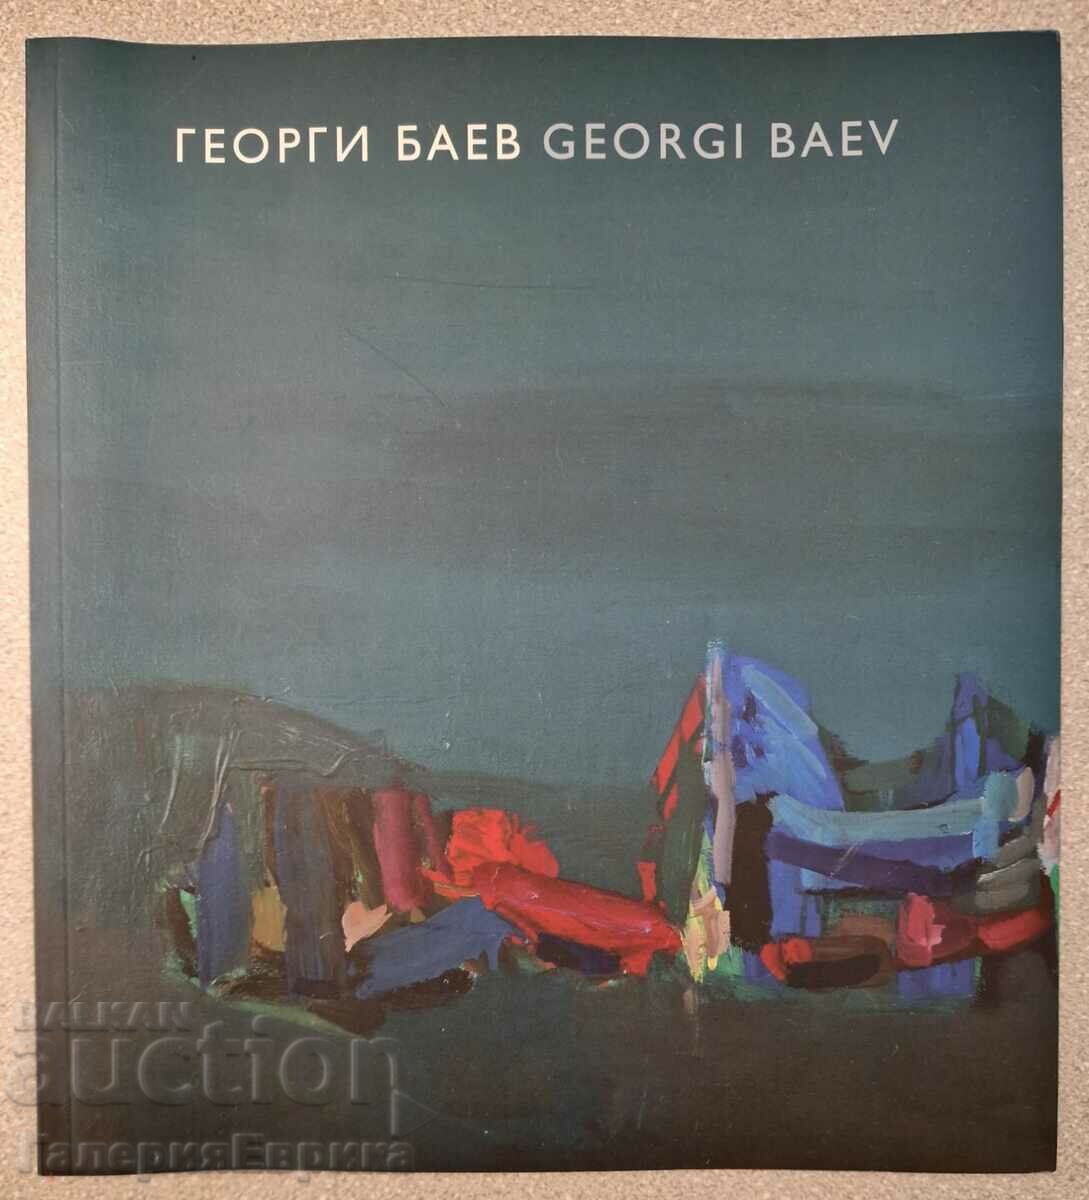 Catalog Georgi Baev